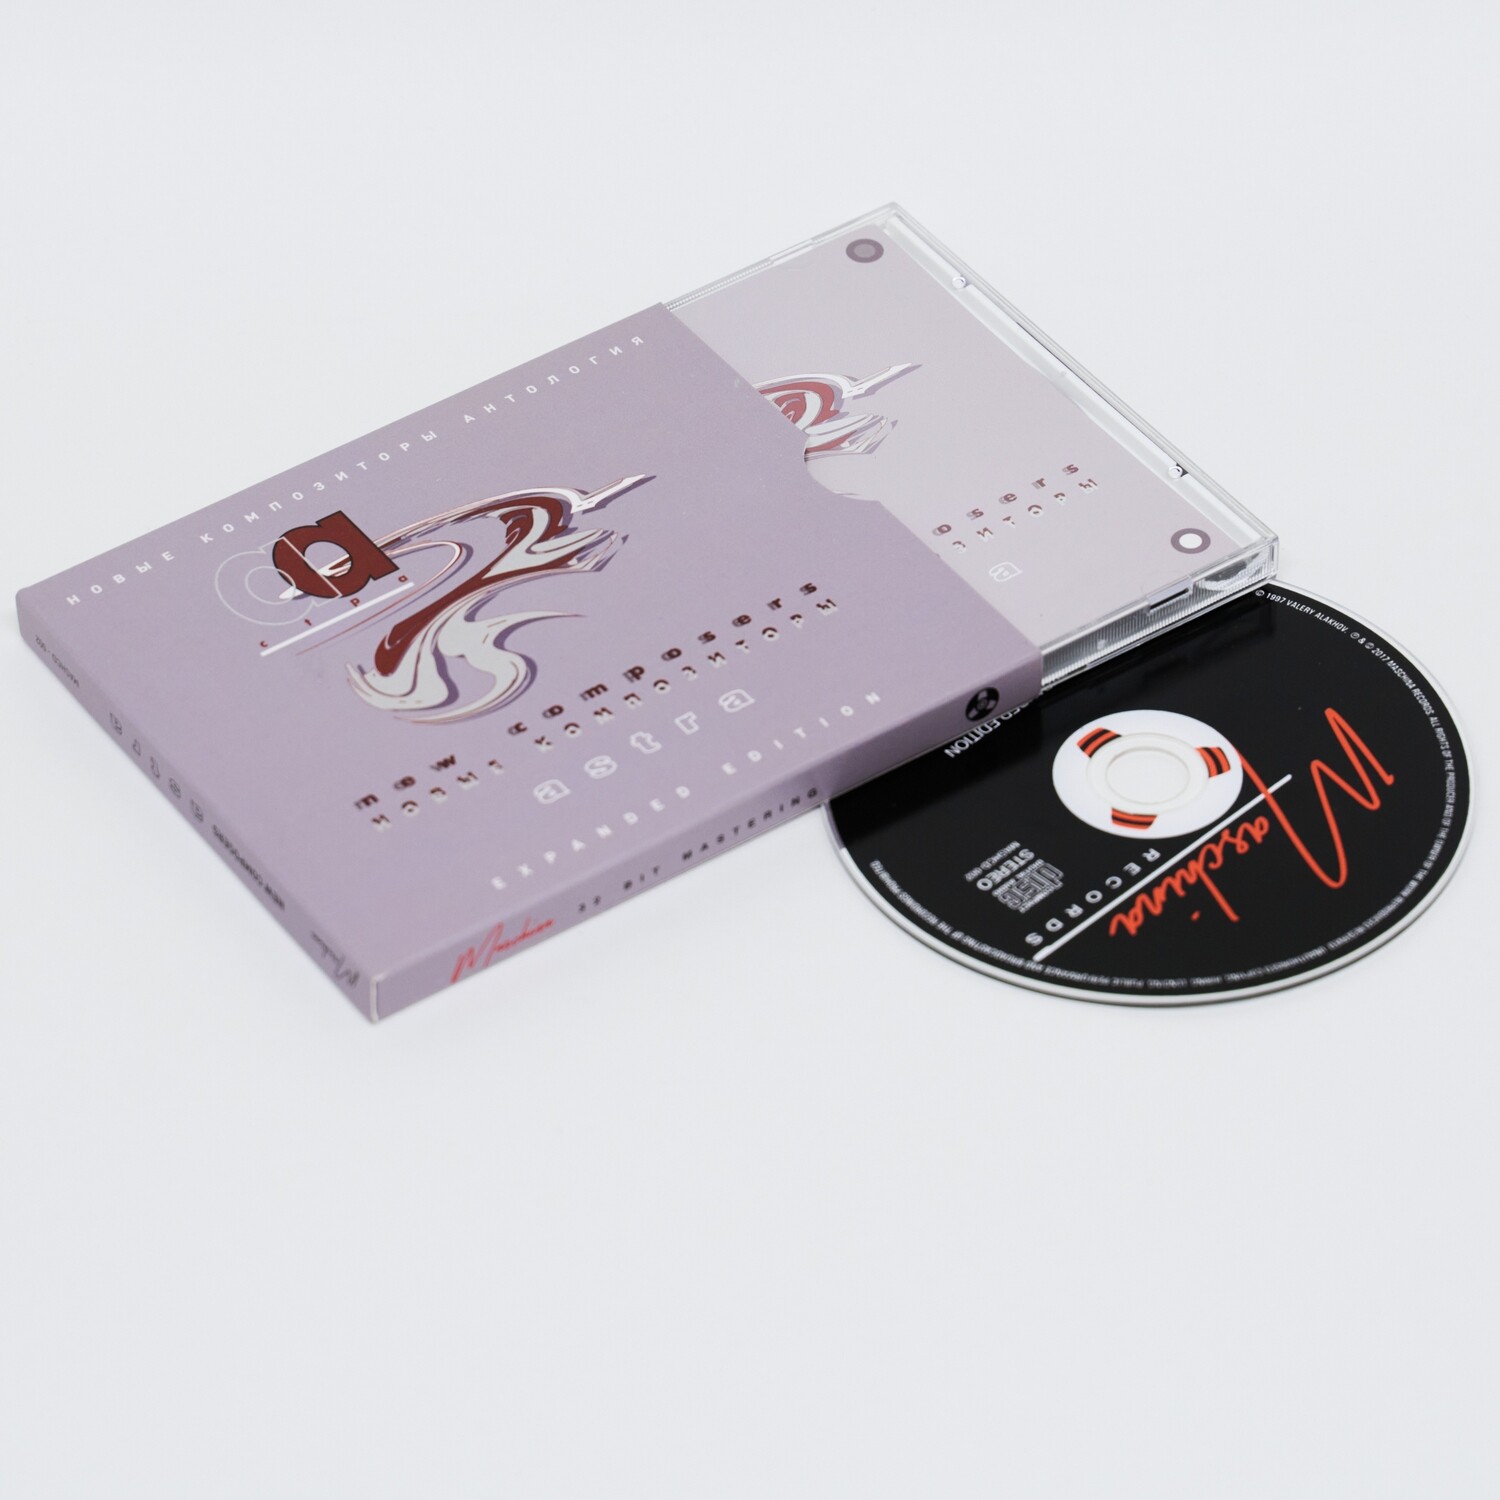 CD: Новые Композиторы — «Астра» (1996/2017) [Expanded Edition]